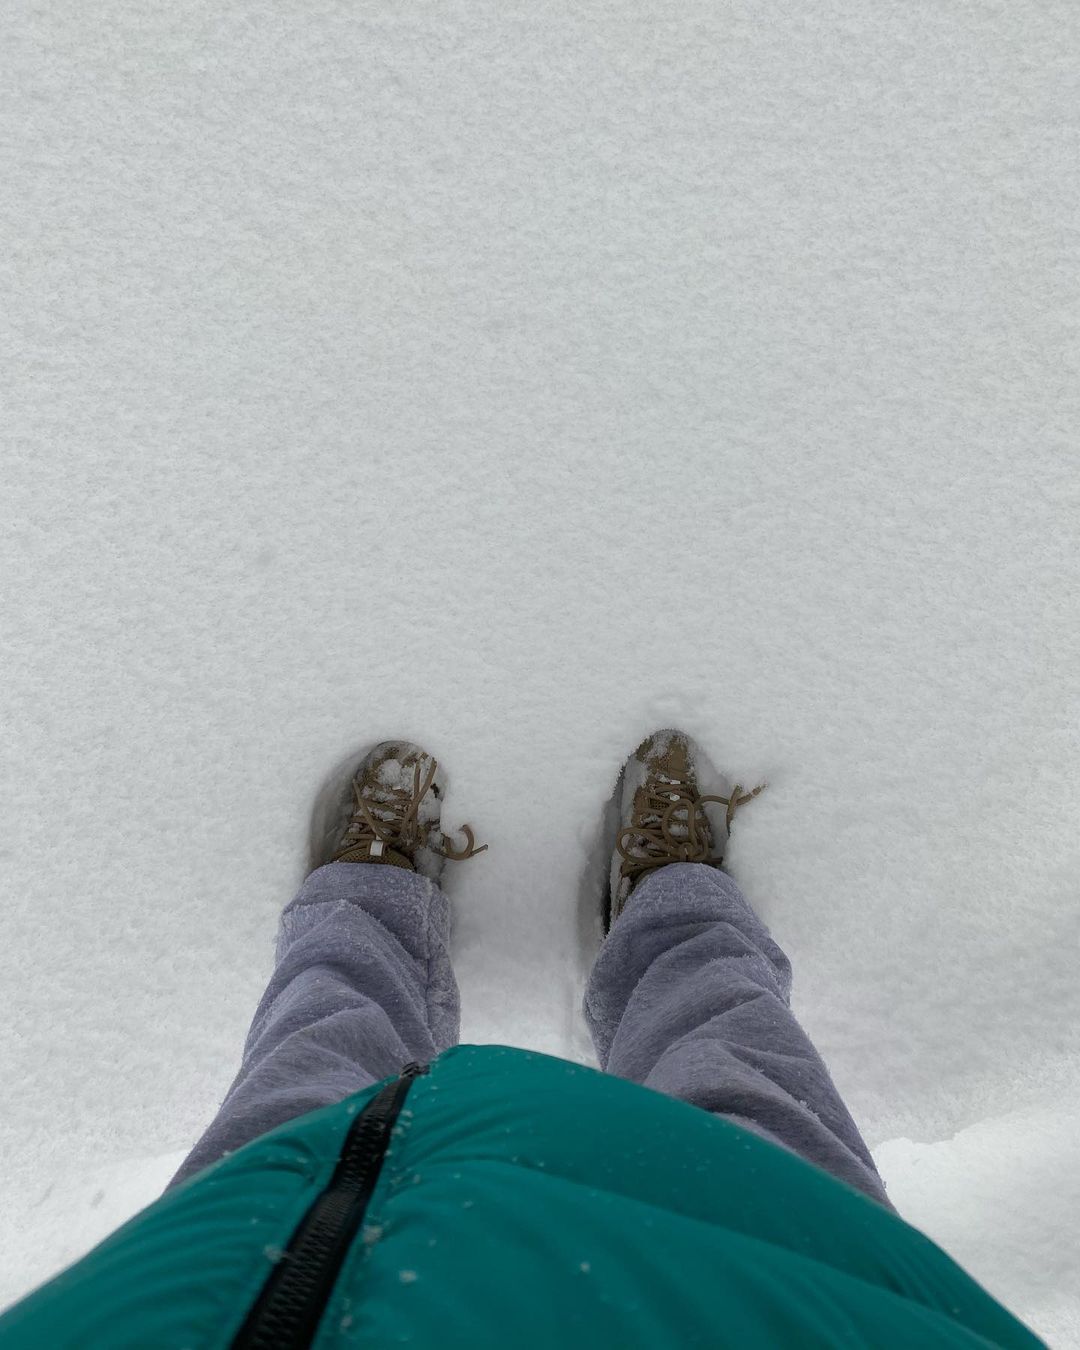 Fotos n°2 : Emily Ratajkowski disfruta de un da de nieve!